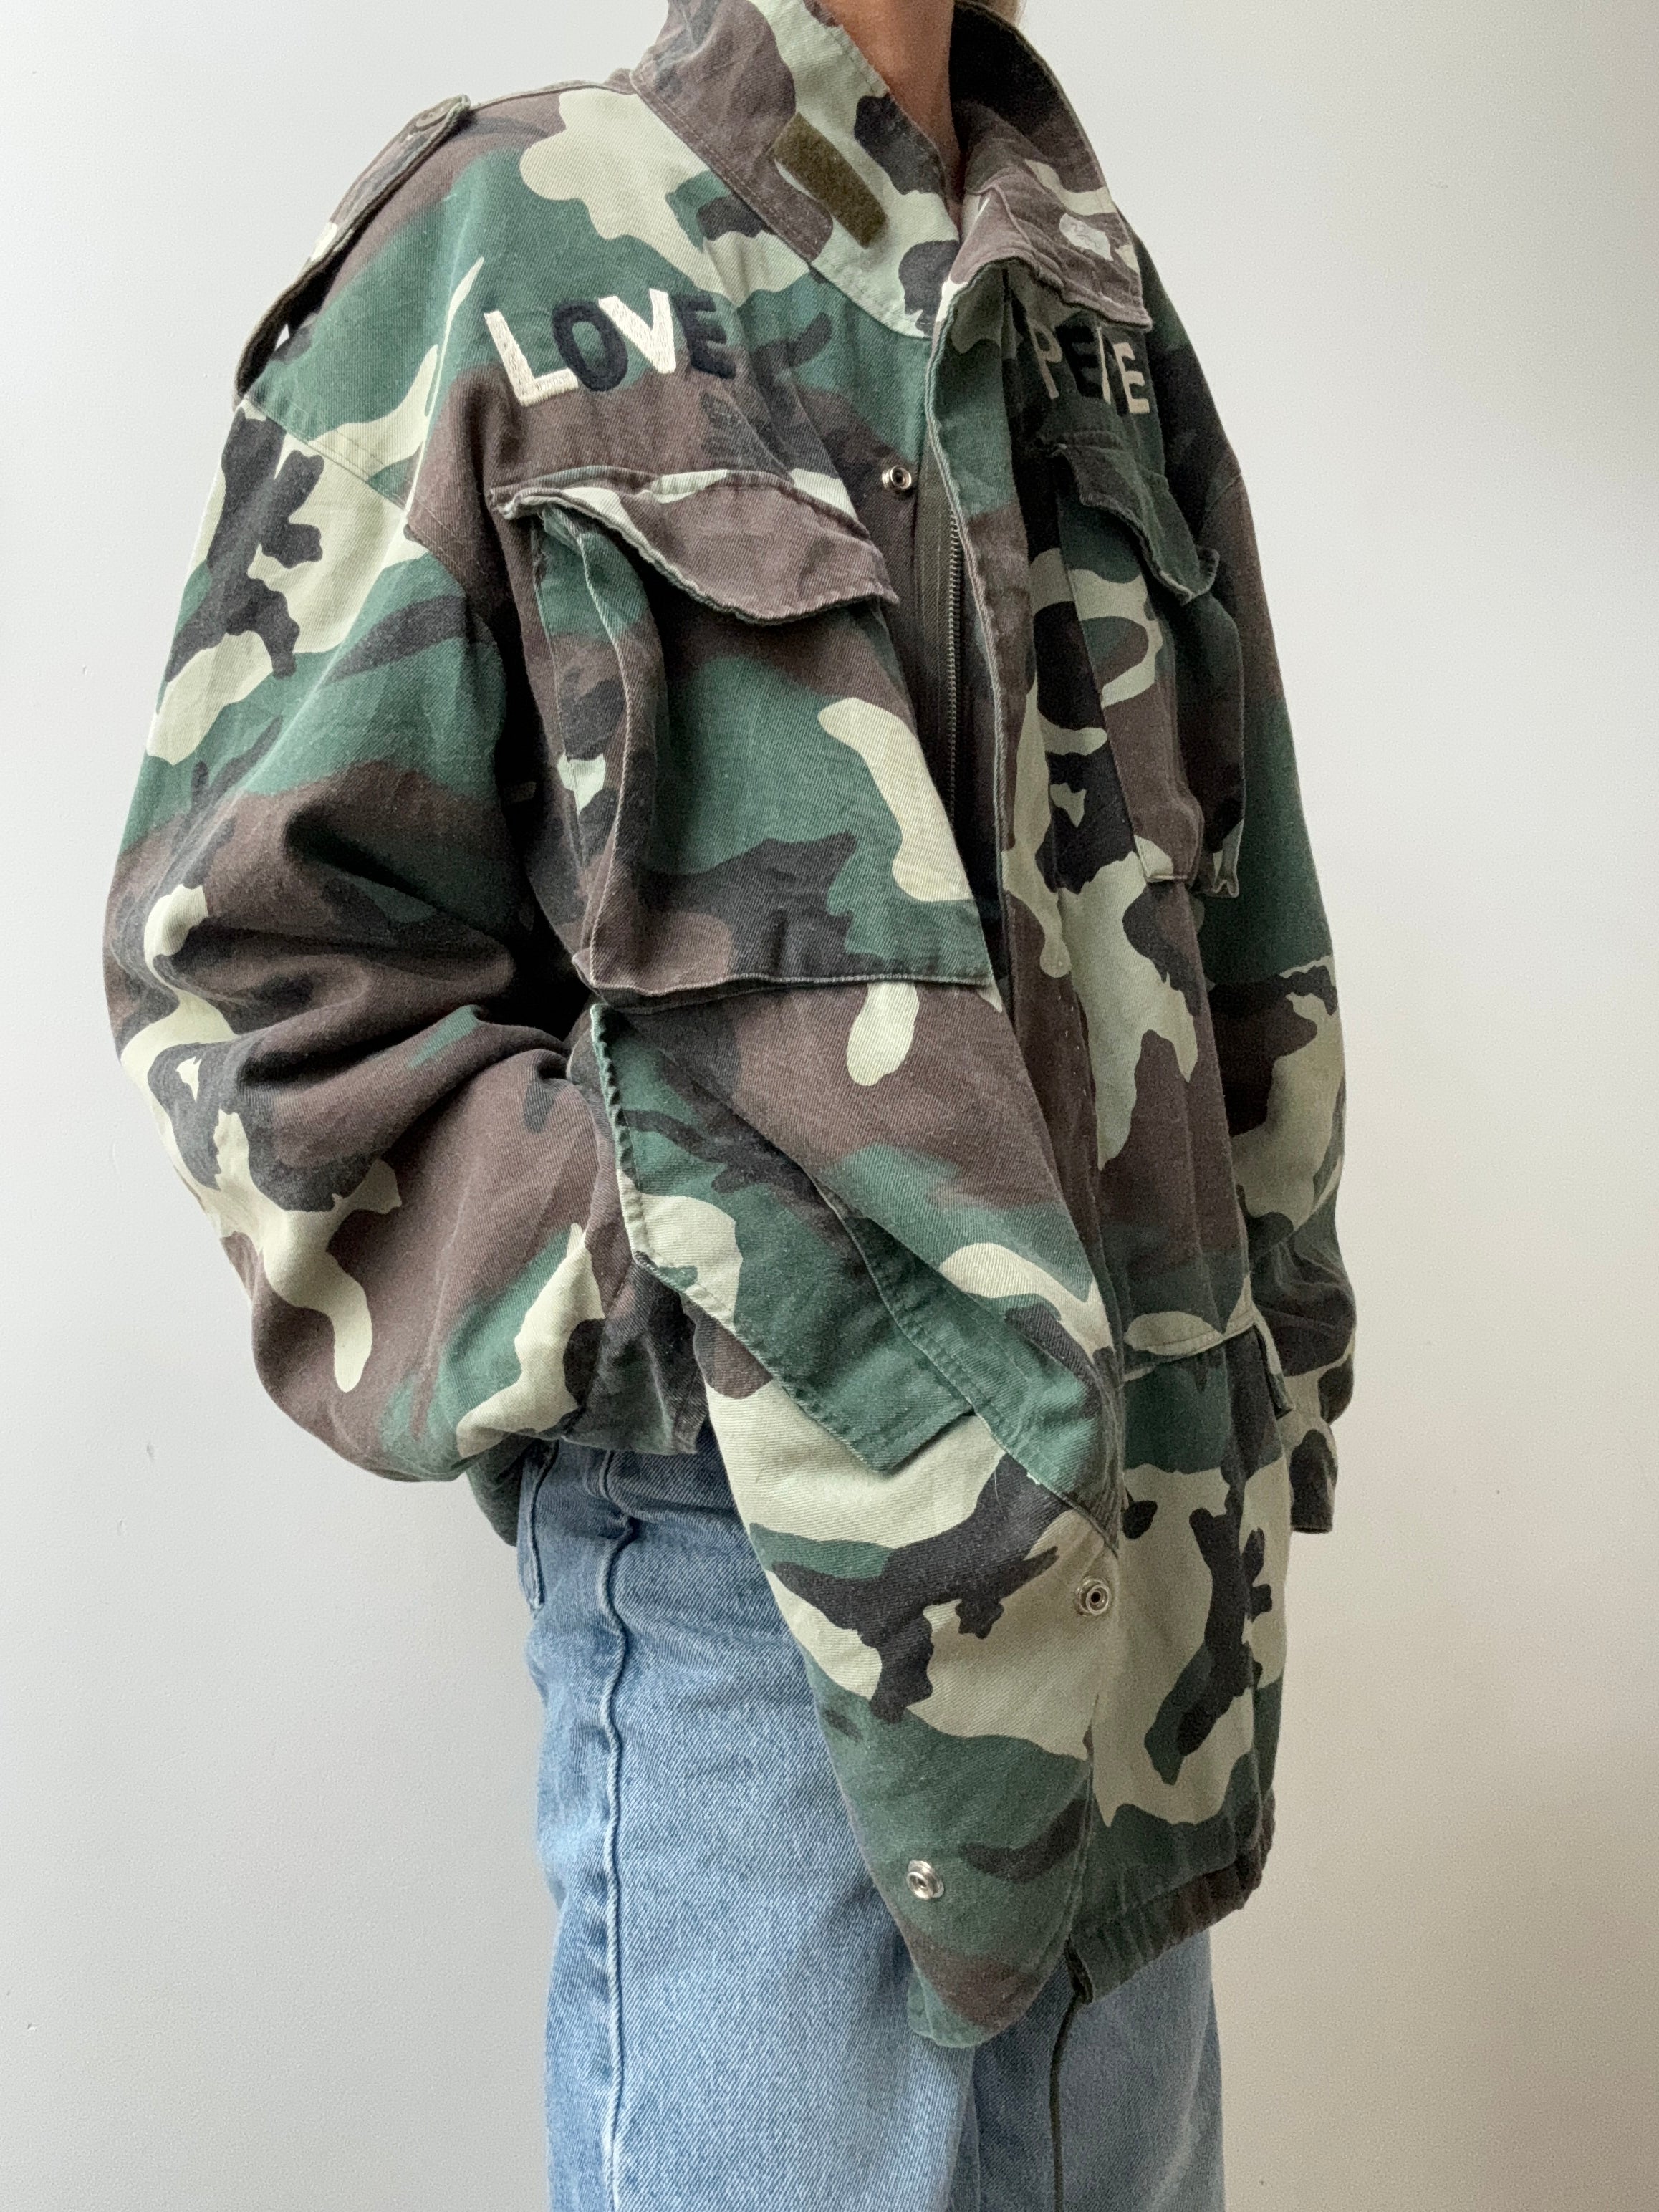 Future Nomads Jackets XLarge Love Peace Army Jacket Camo Padded Jacket